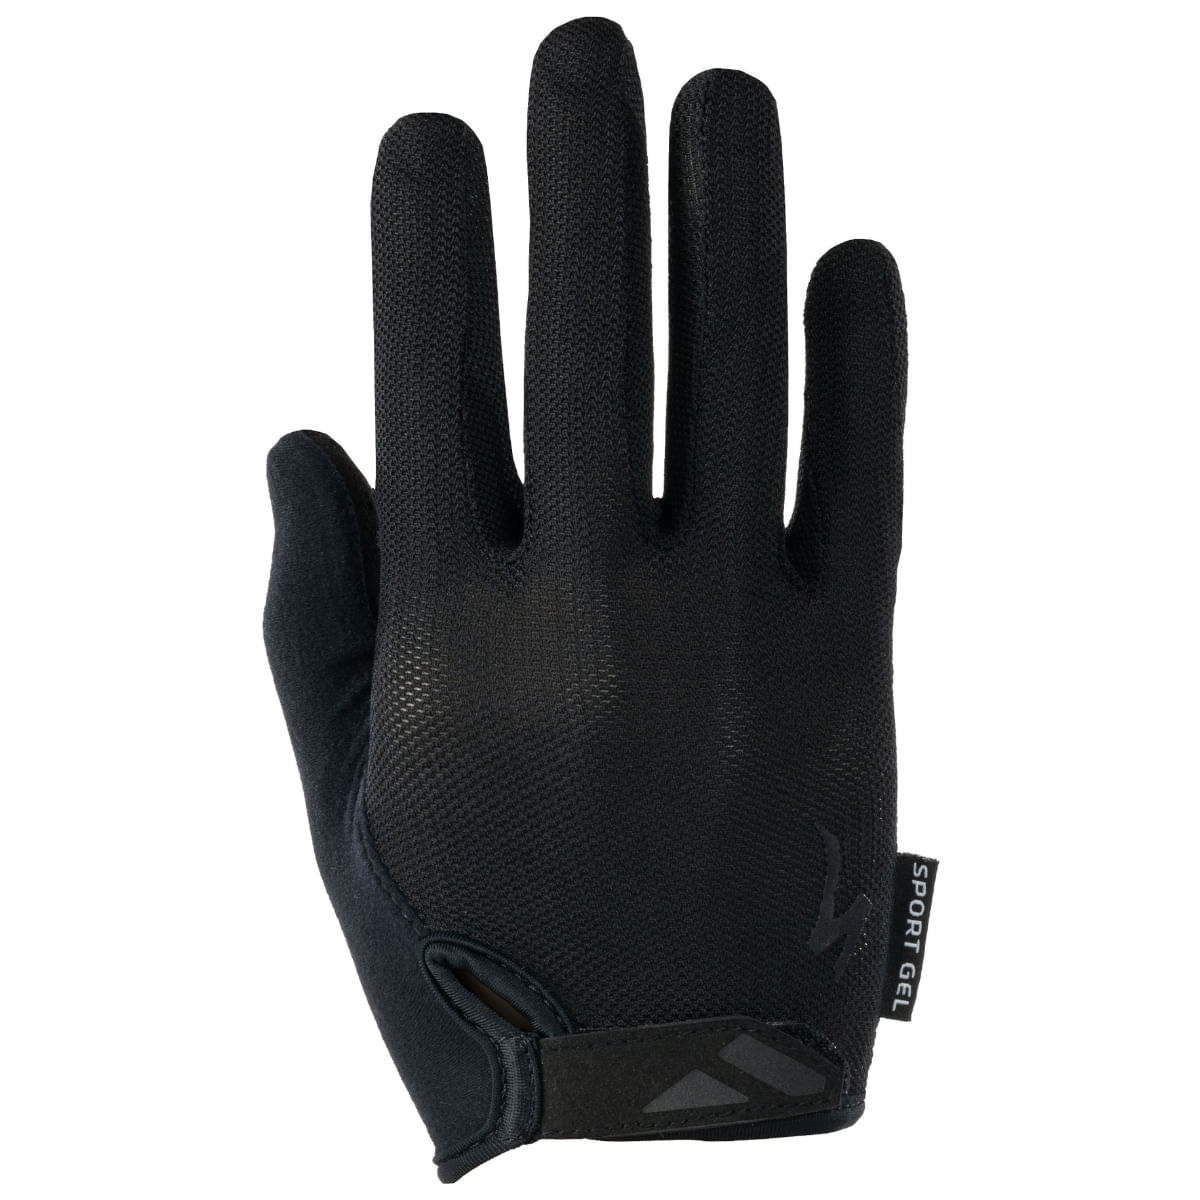 Specialized Body Geometry Sport Gel Long Finger Glove - Women's - Als.com